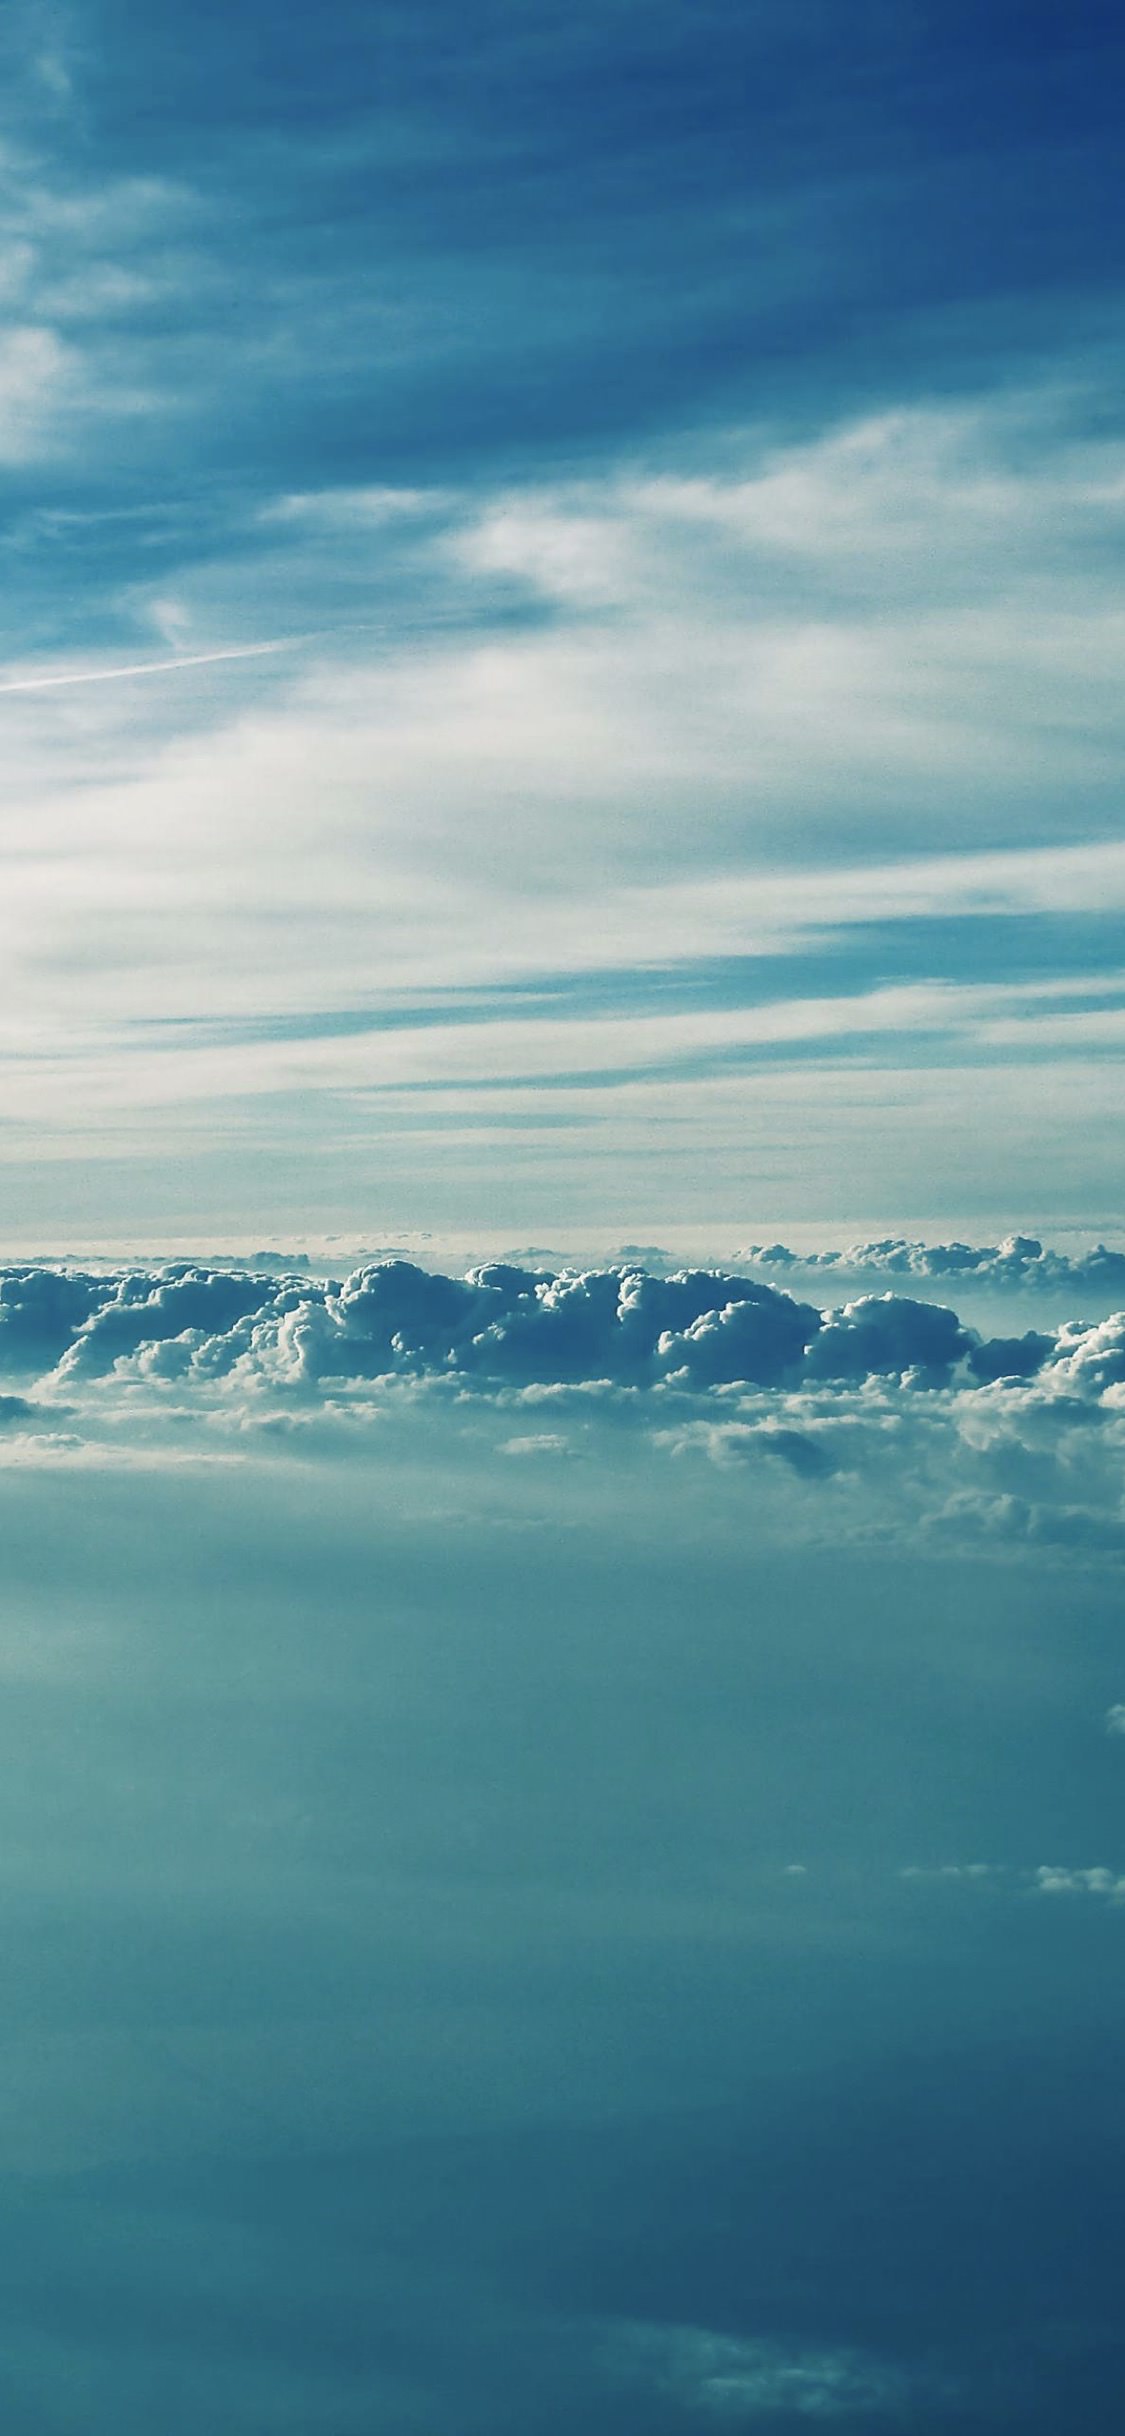 Cảnh đồi mây xanh: Khám phá cảnh đồi mây xanh tuyệt đẹp trong bức ảnh này. Thiên nhiên hùng vĩ kết hợp với màu xanh mịn màng sẽ mang đến cho bạn sự tươi mới và bình yên. Hãy trở thành những người đầu tiên xem bức ảnh này!